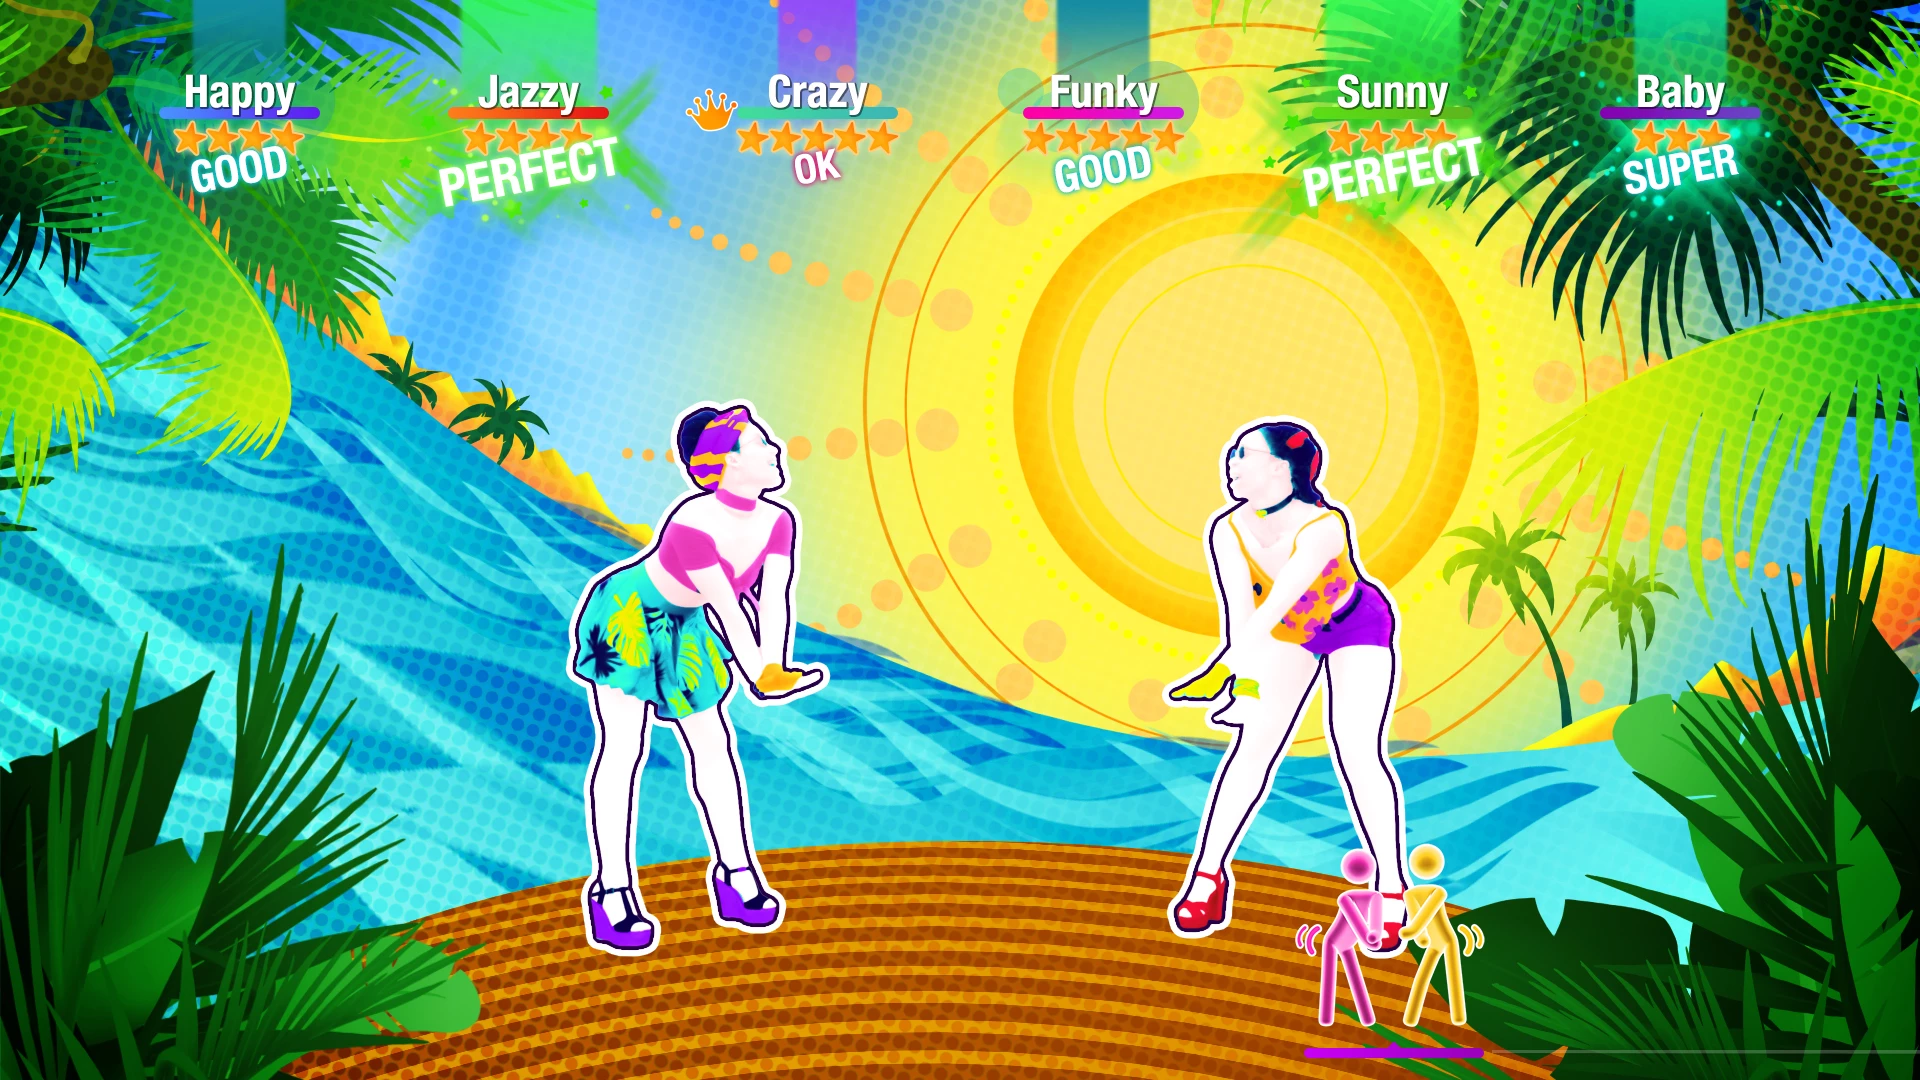 Just Dance 2020 voor de PlayStation 4 kopen op nedgame.nl